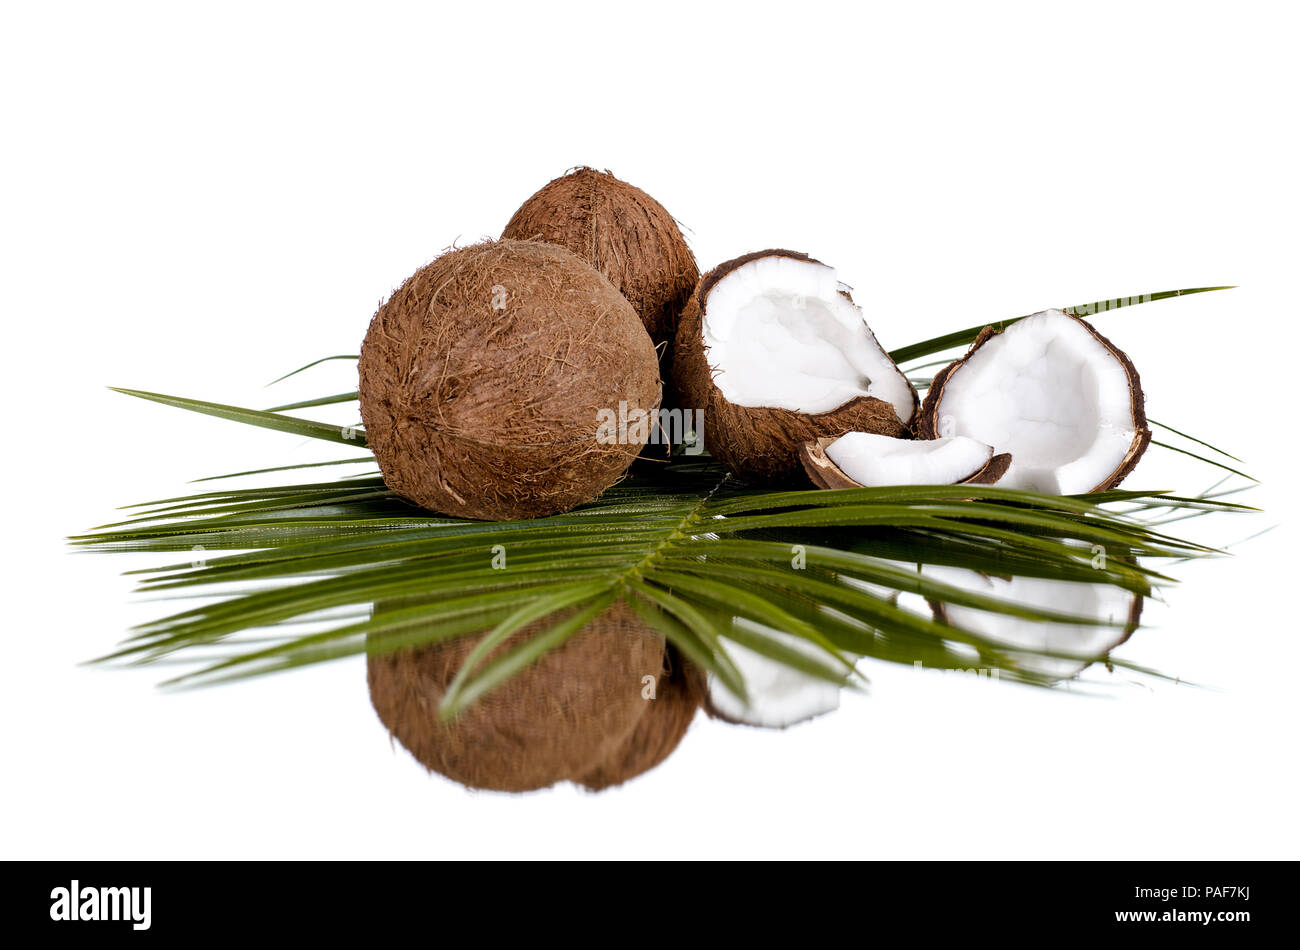 Still life de coco tuerca agrietada con la rama de olivo, aislado sobre fondo blanco. Foto de stock